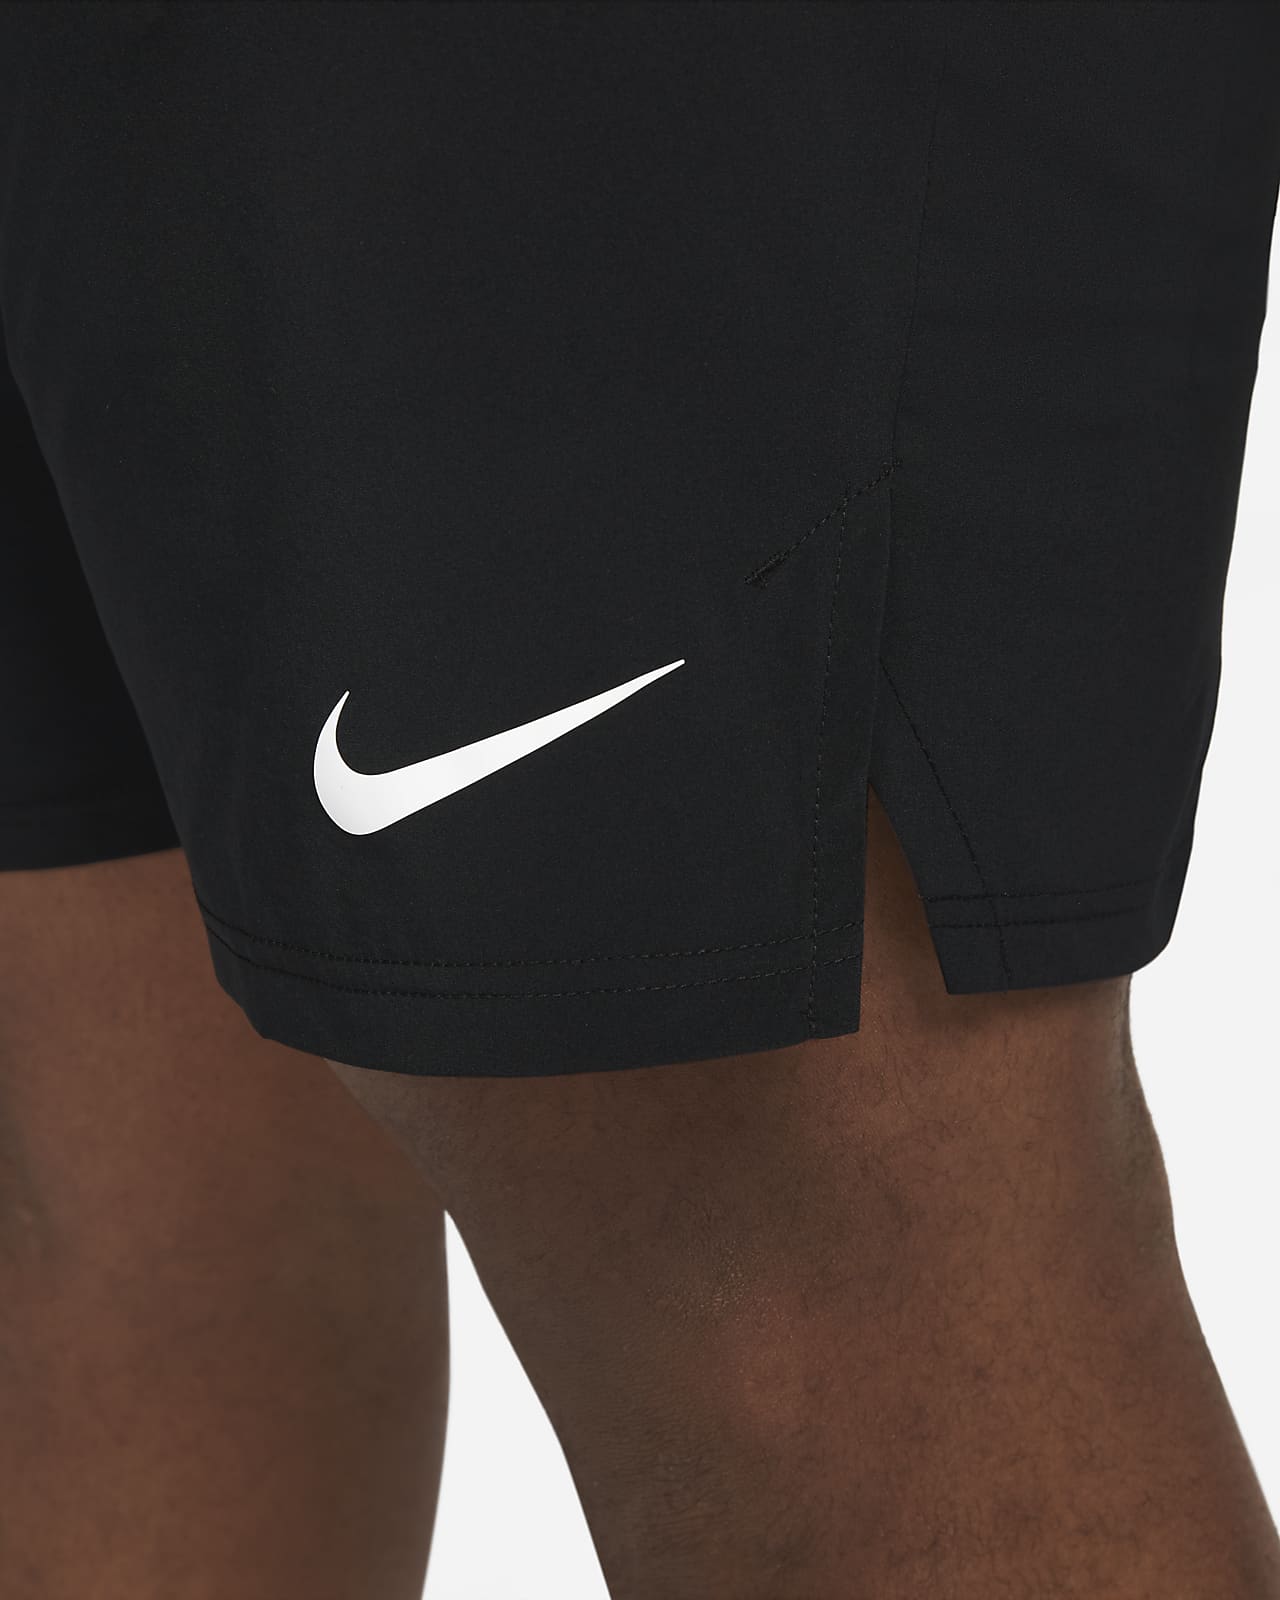 Shorts de training et de Fitness pour Homme. Nike FR